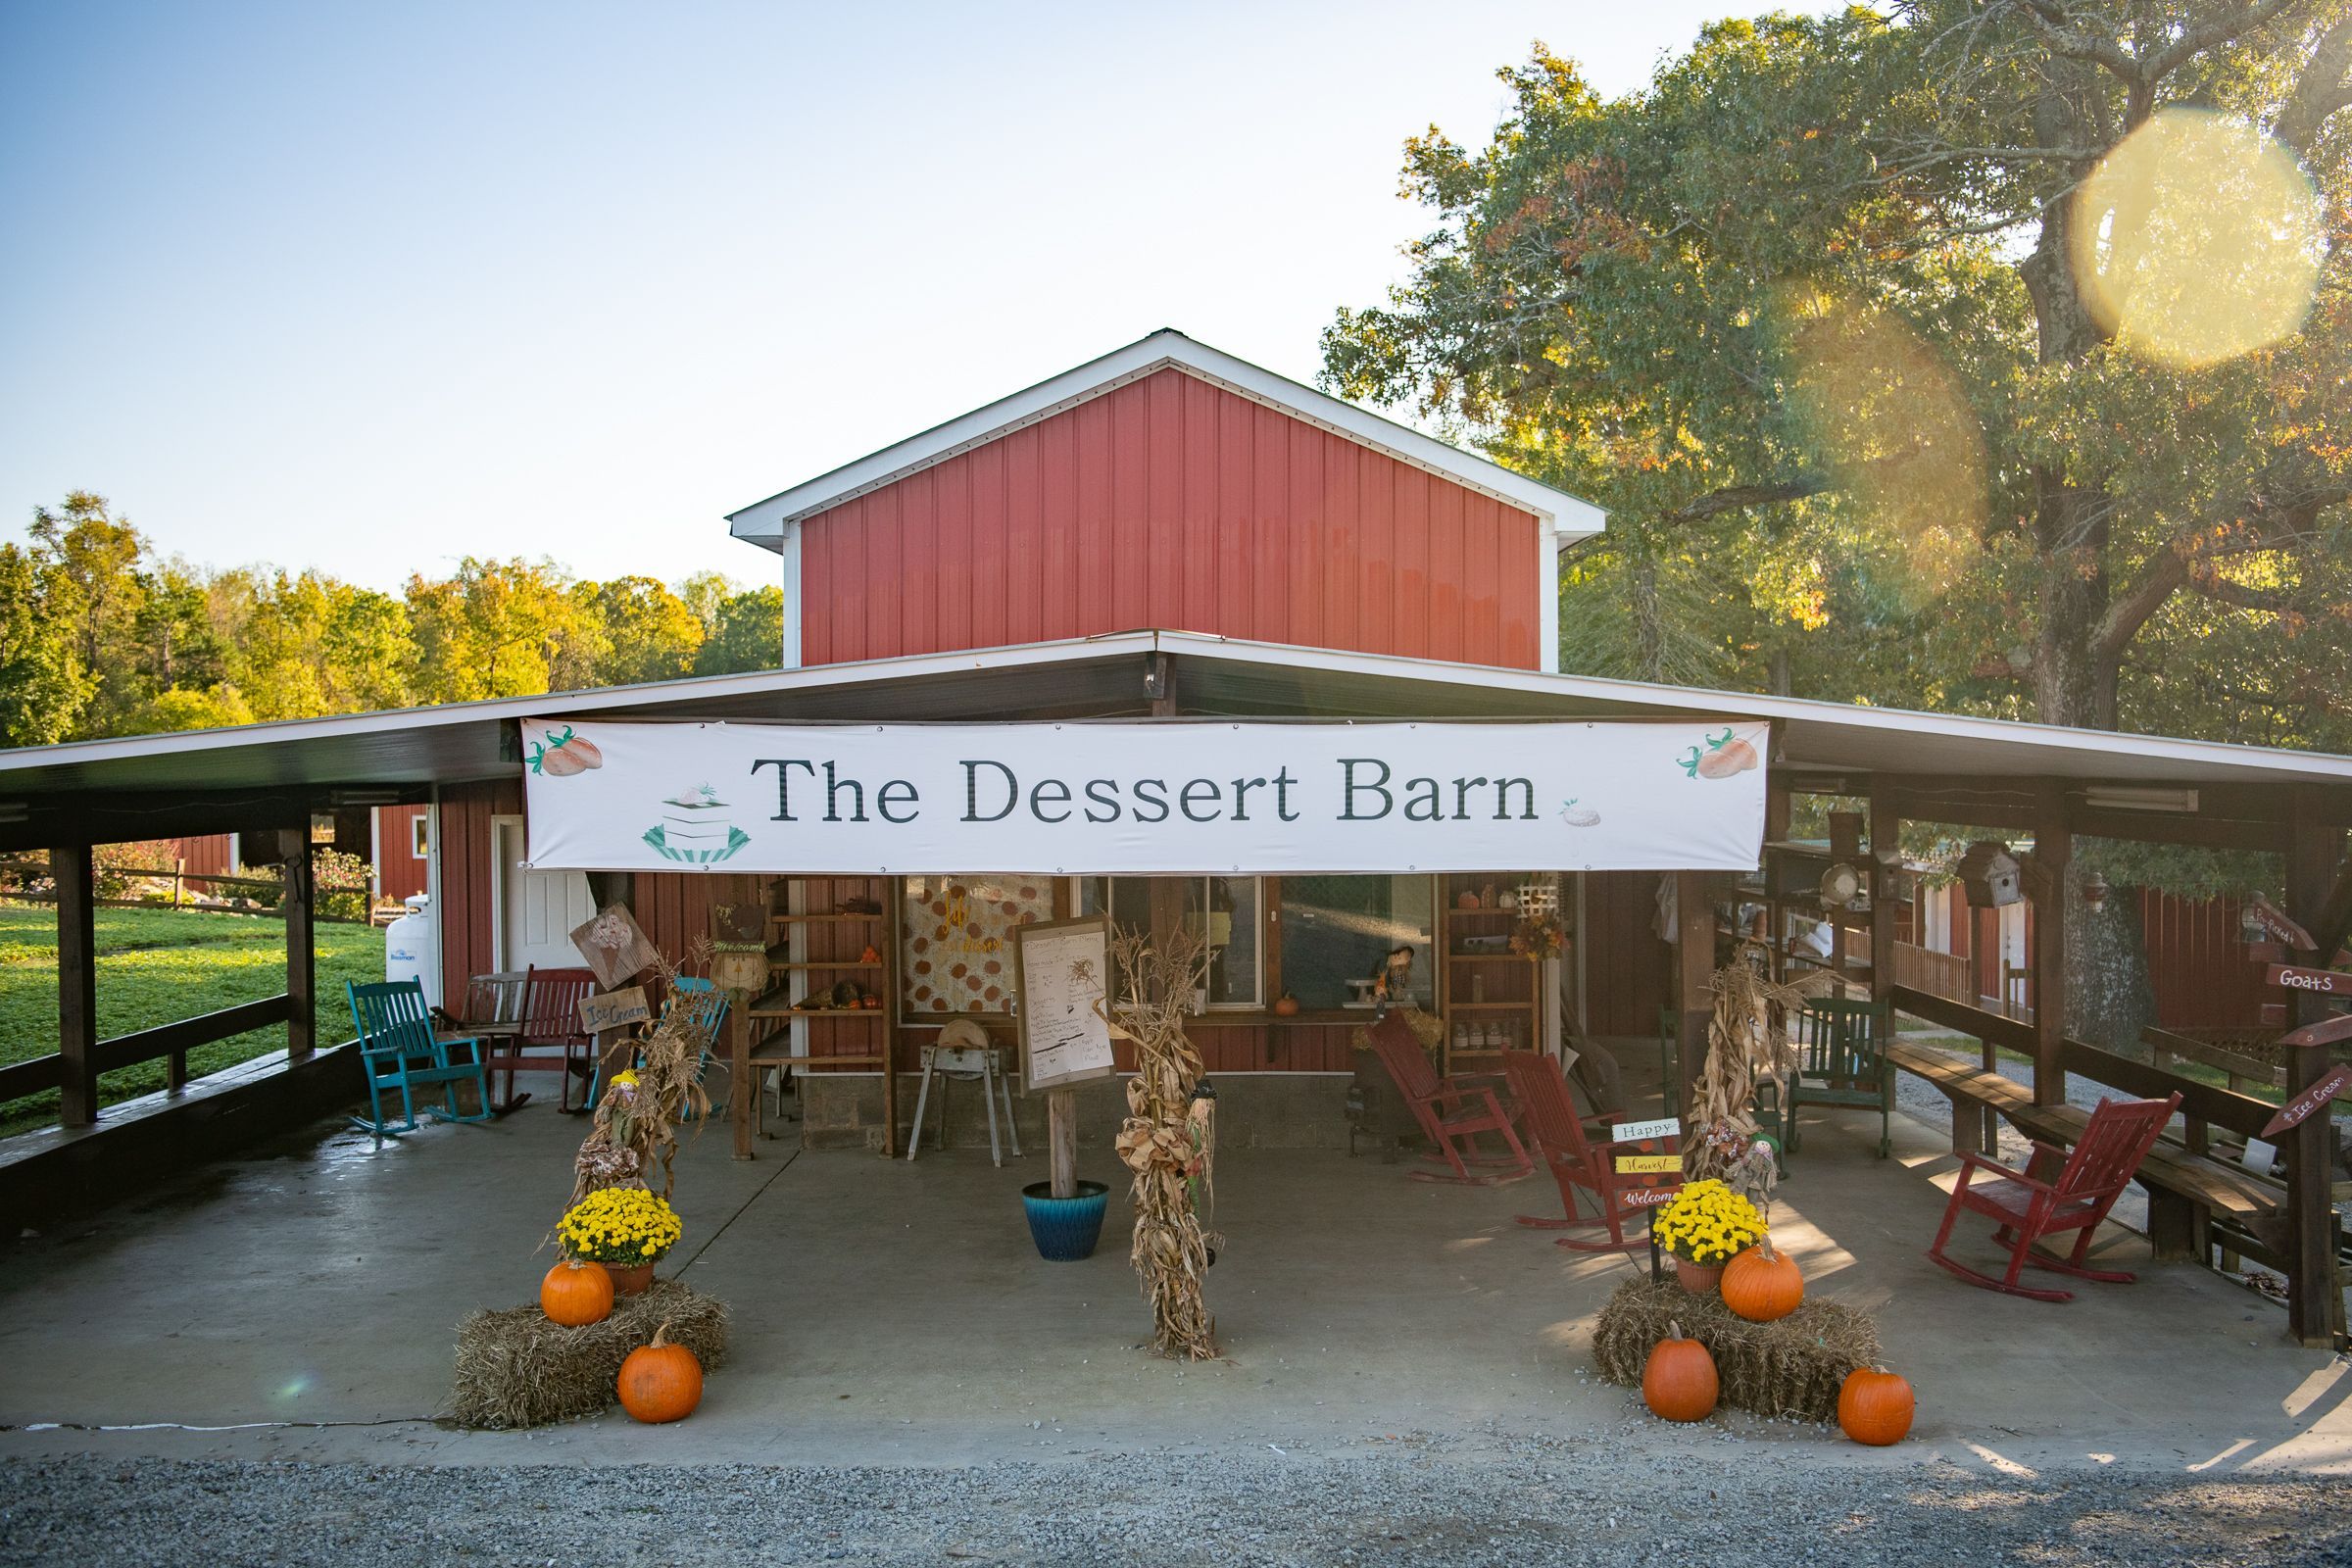 The dessert barn that serves homemade treats at Ingram's Family Farm.